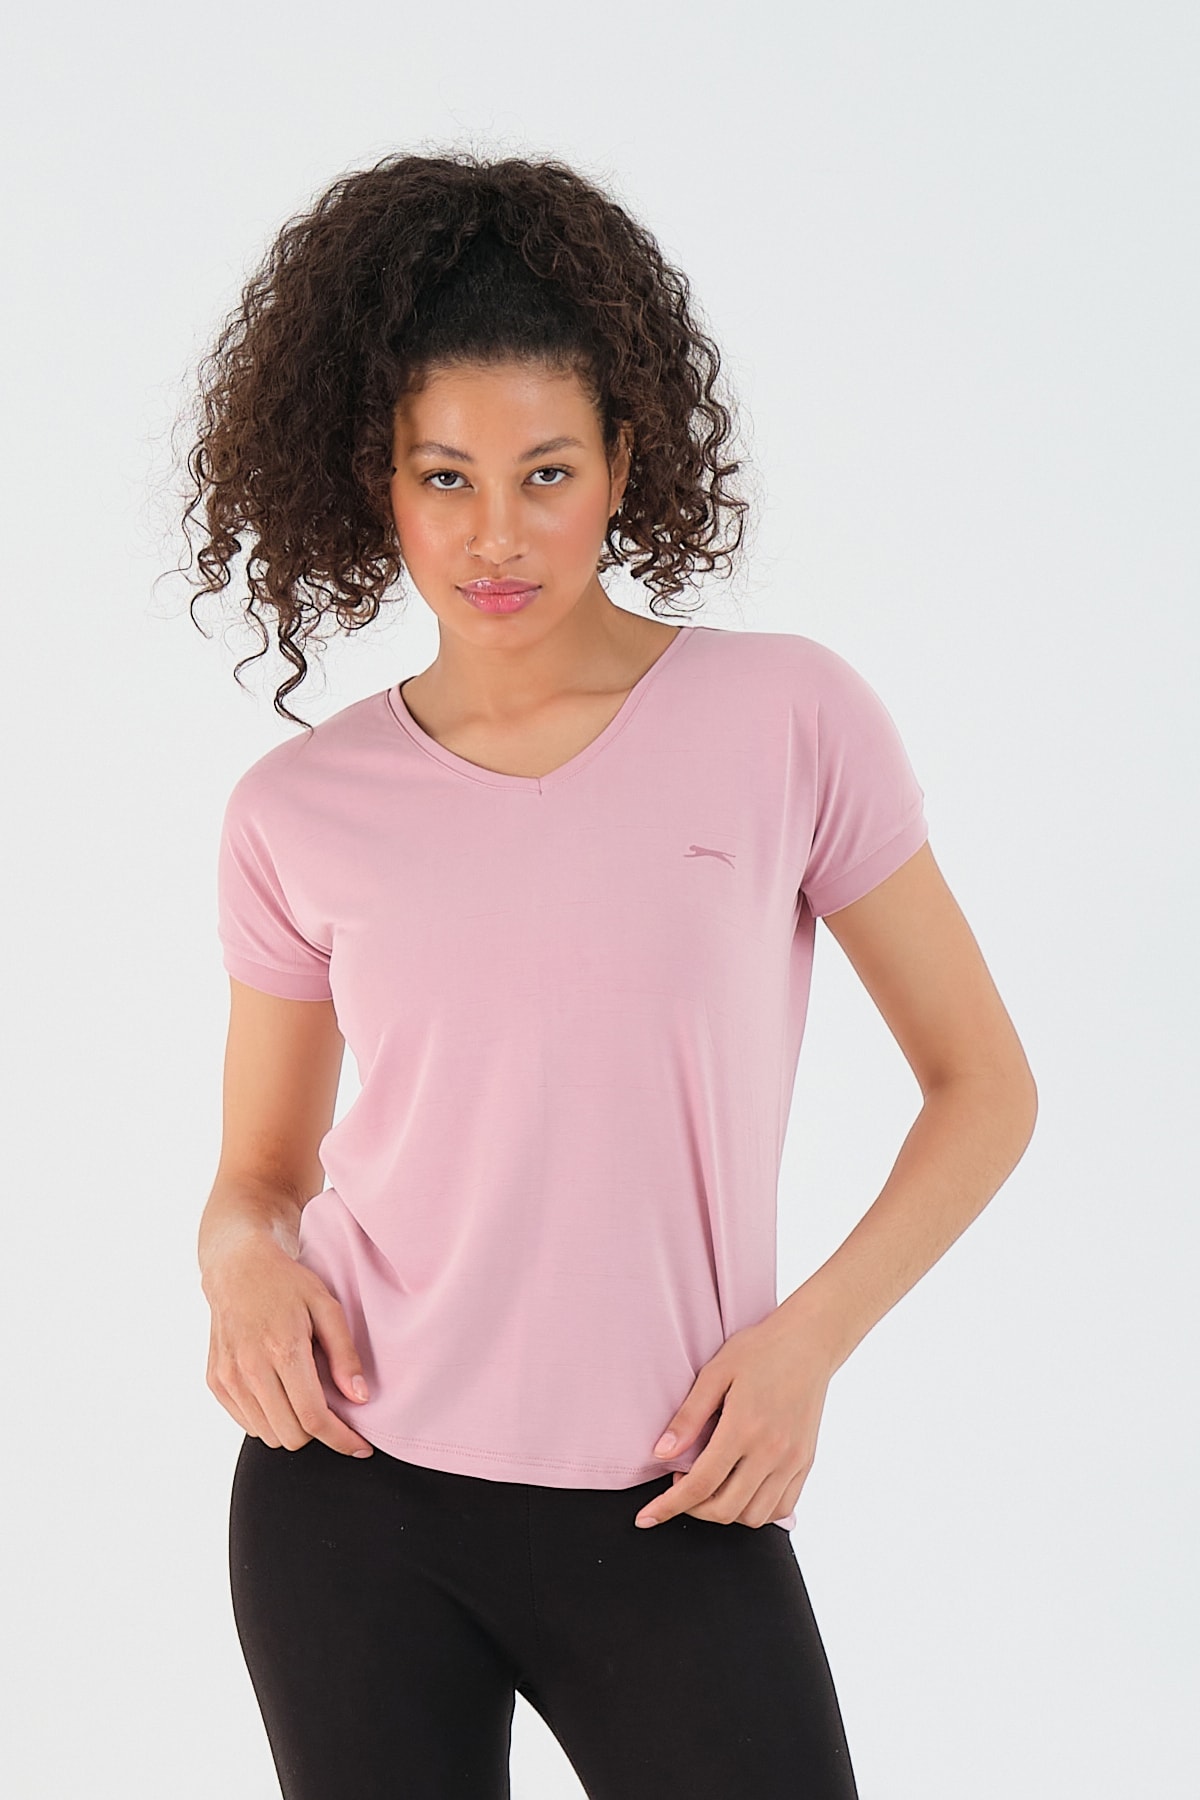 Levně Slazenger Play Women's T-shirt Pink Women's Sports T-Shirt